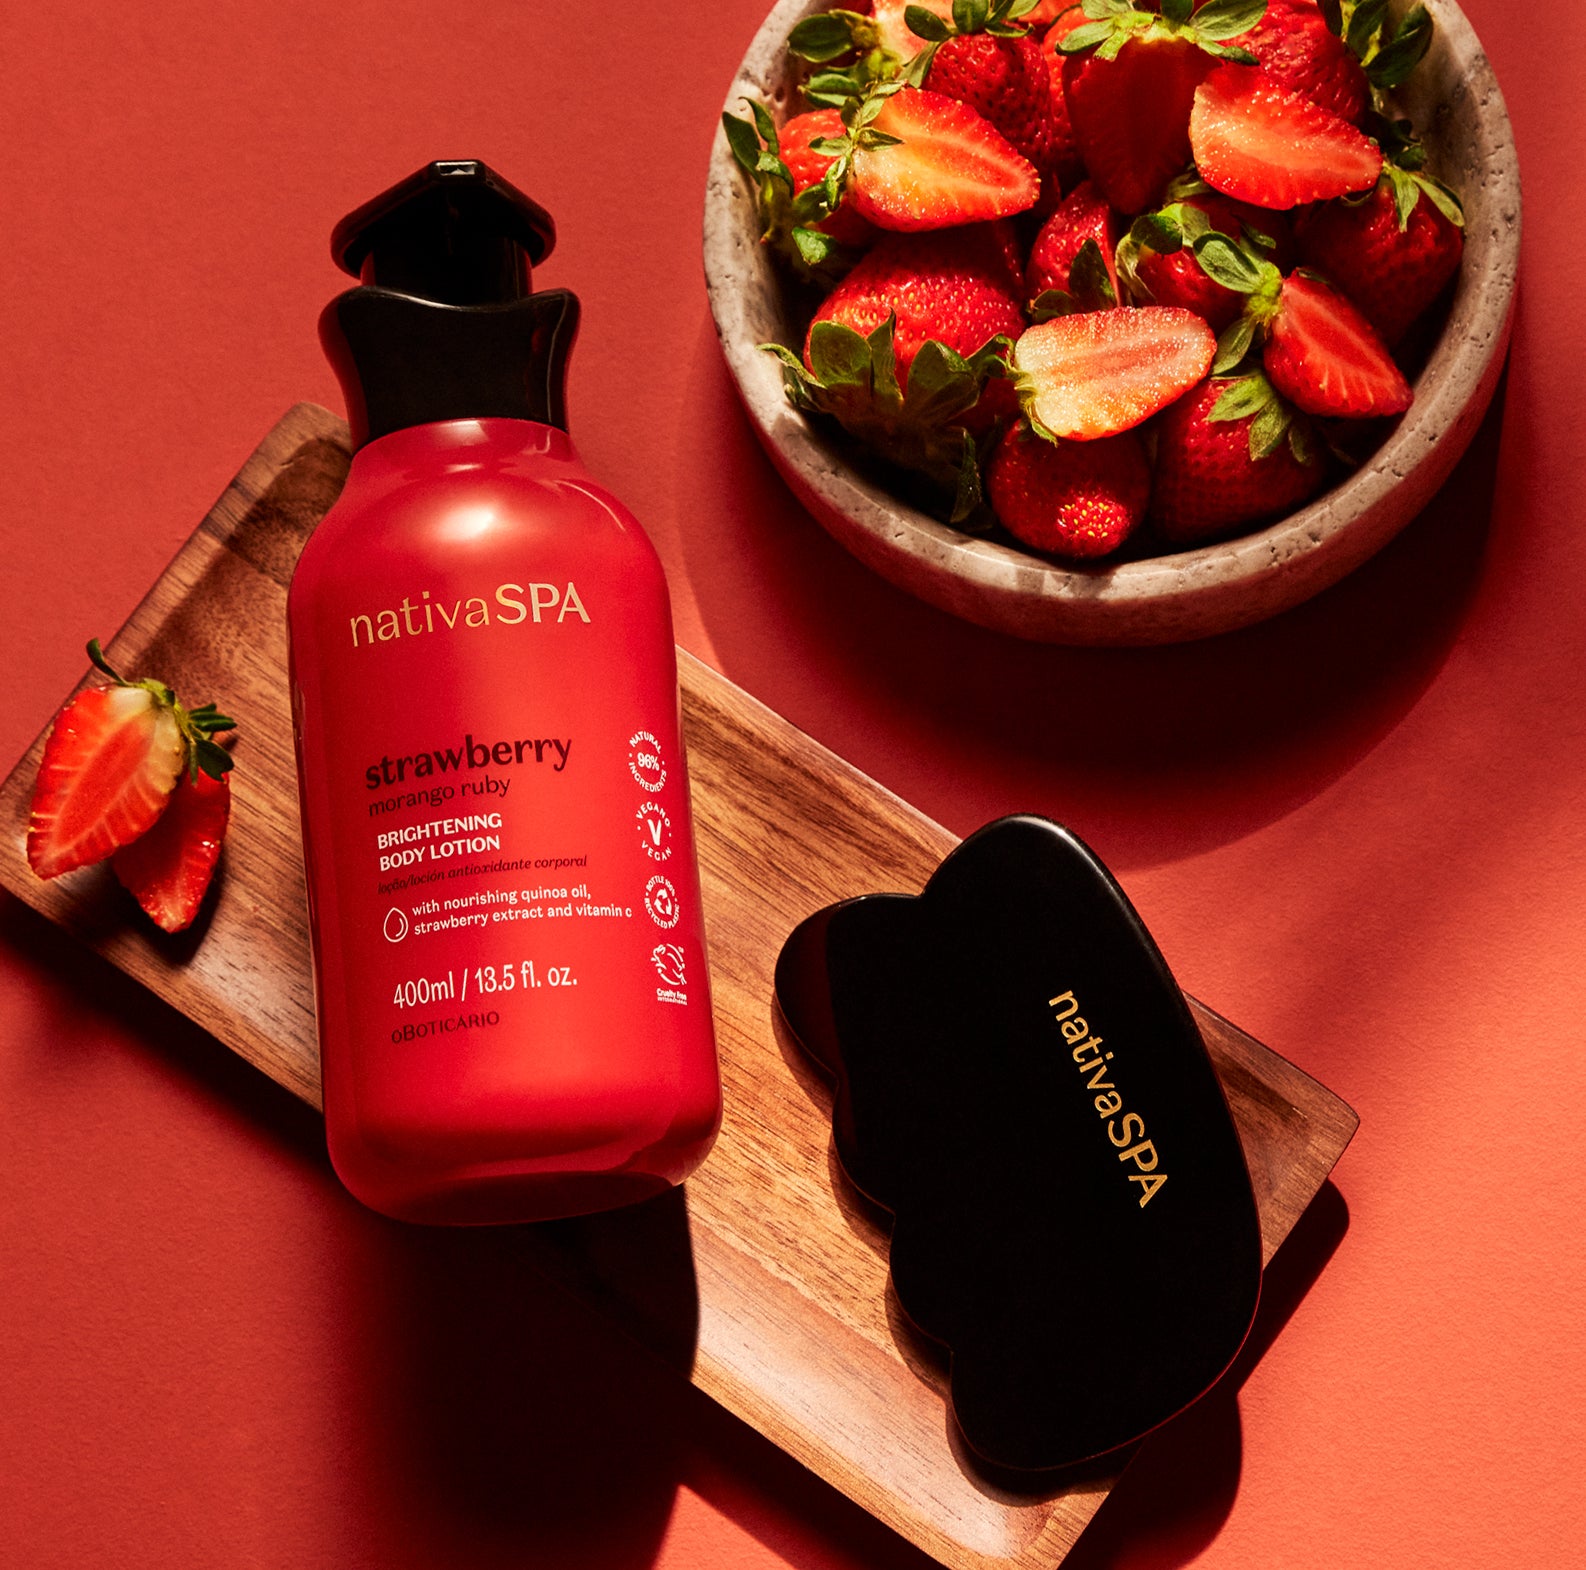 Strawberry Brightening Body Lotion – Nativa SPA